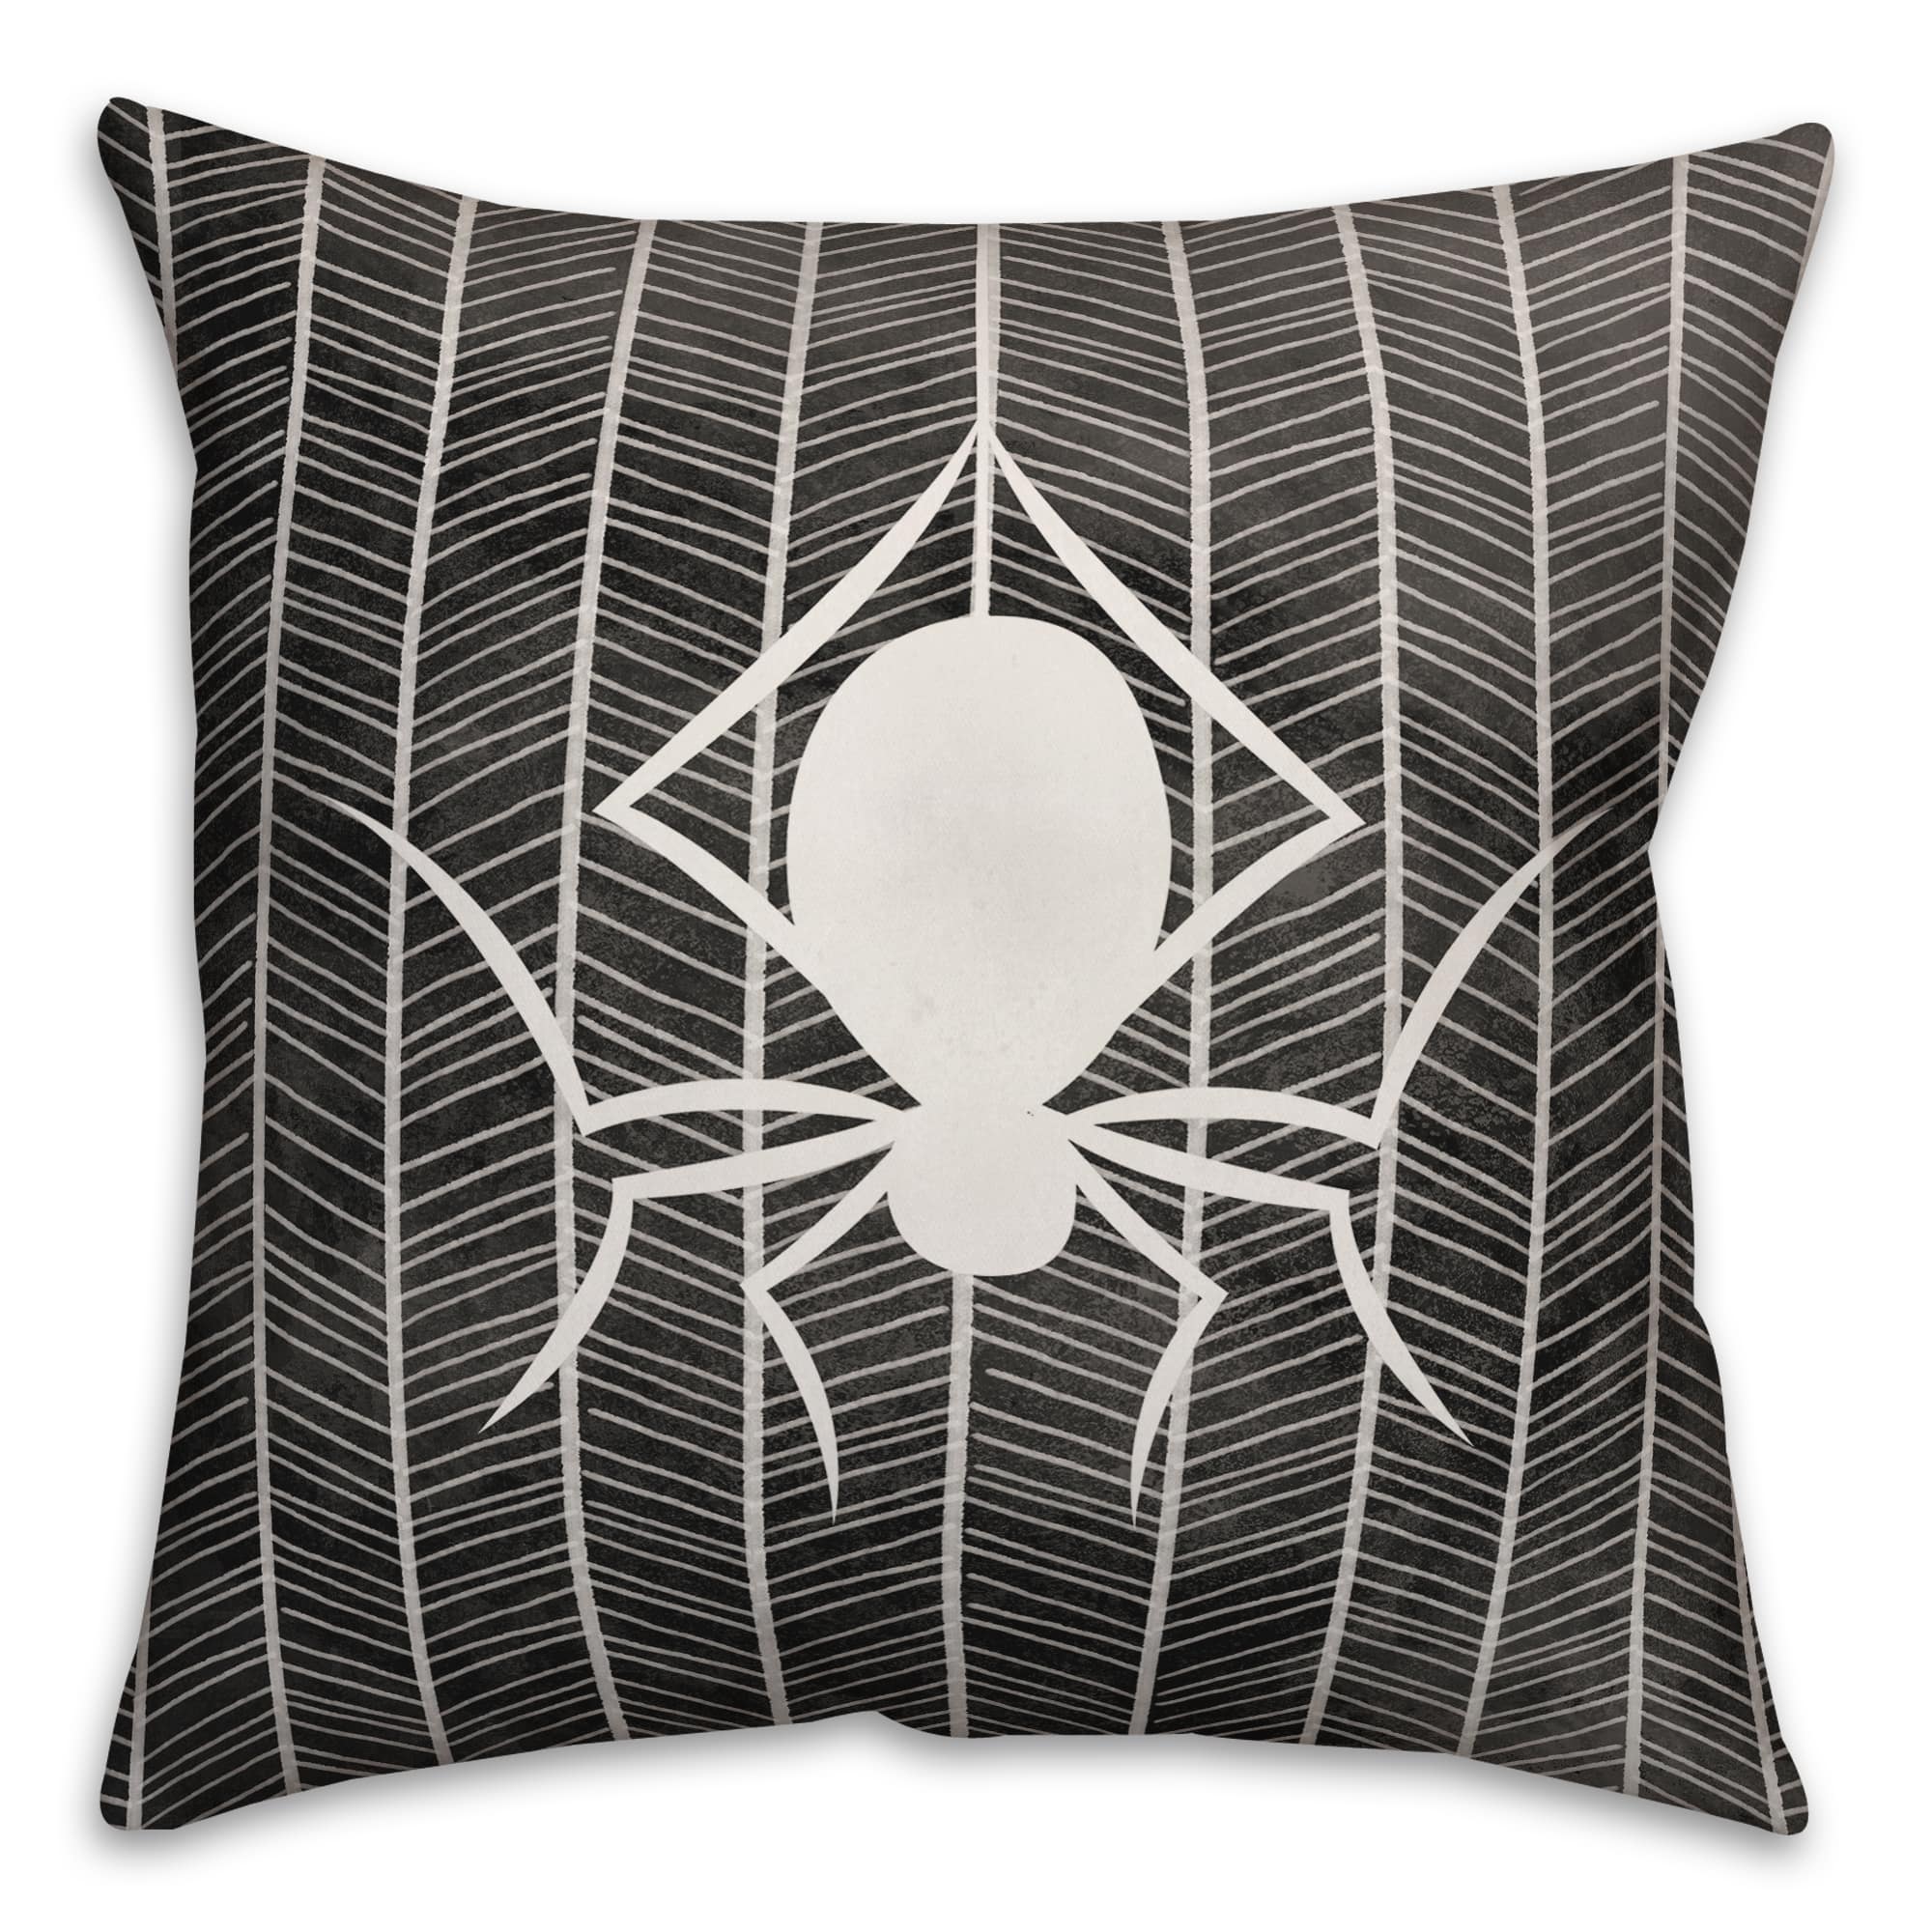 Spiderweb Spun Poly Throw Pillow